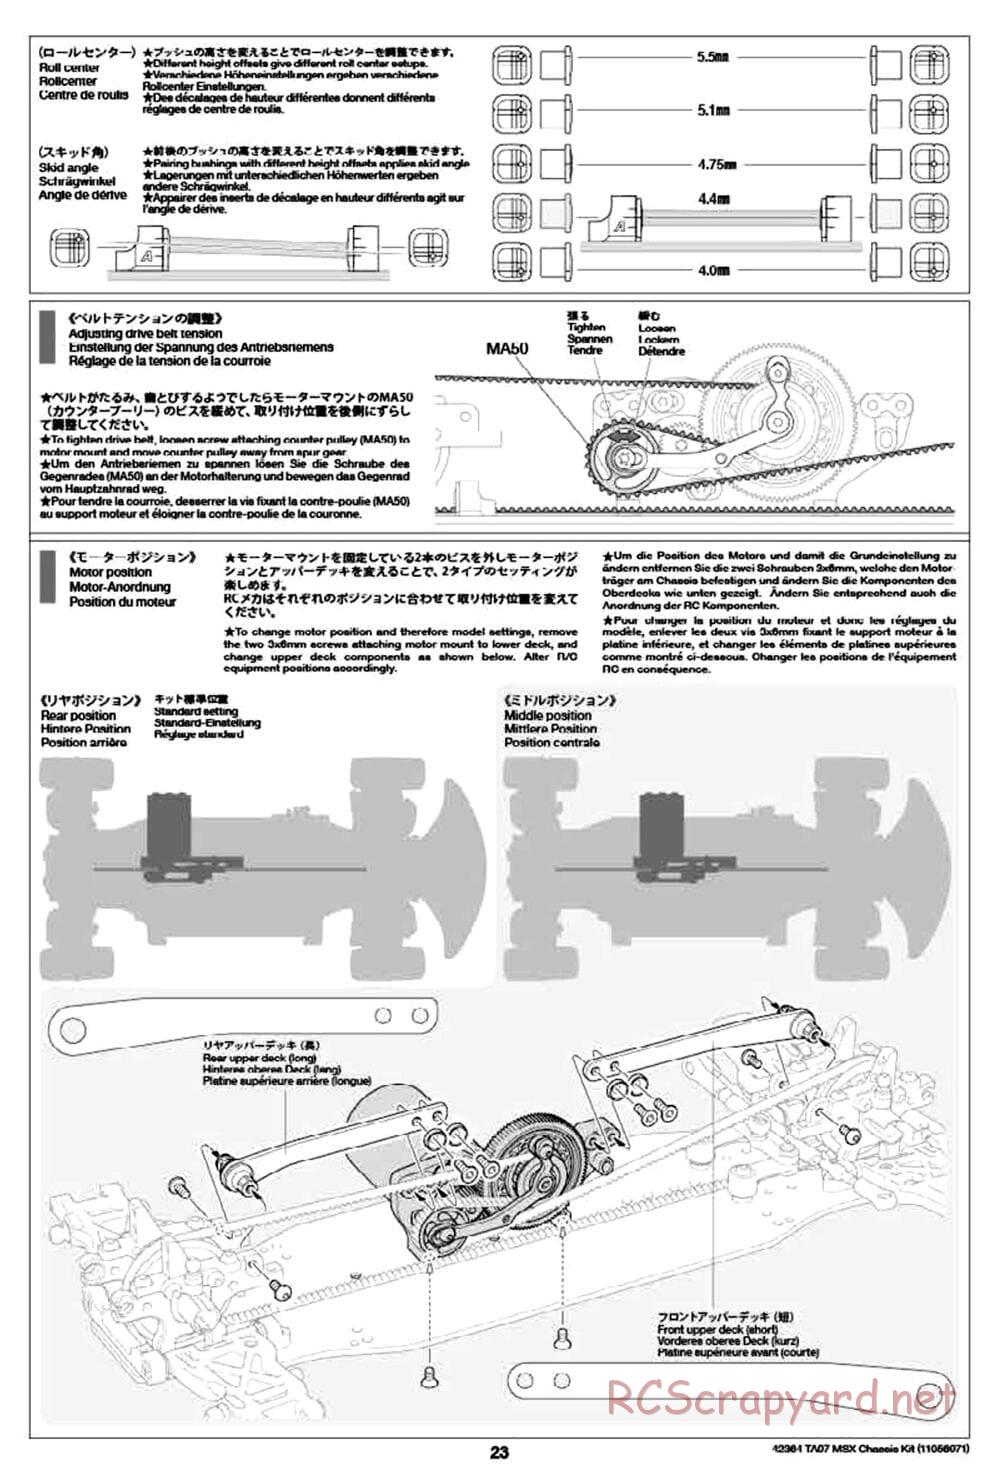 Tamiya - TA07 MSX Chassis - Manual - Page 23